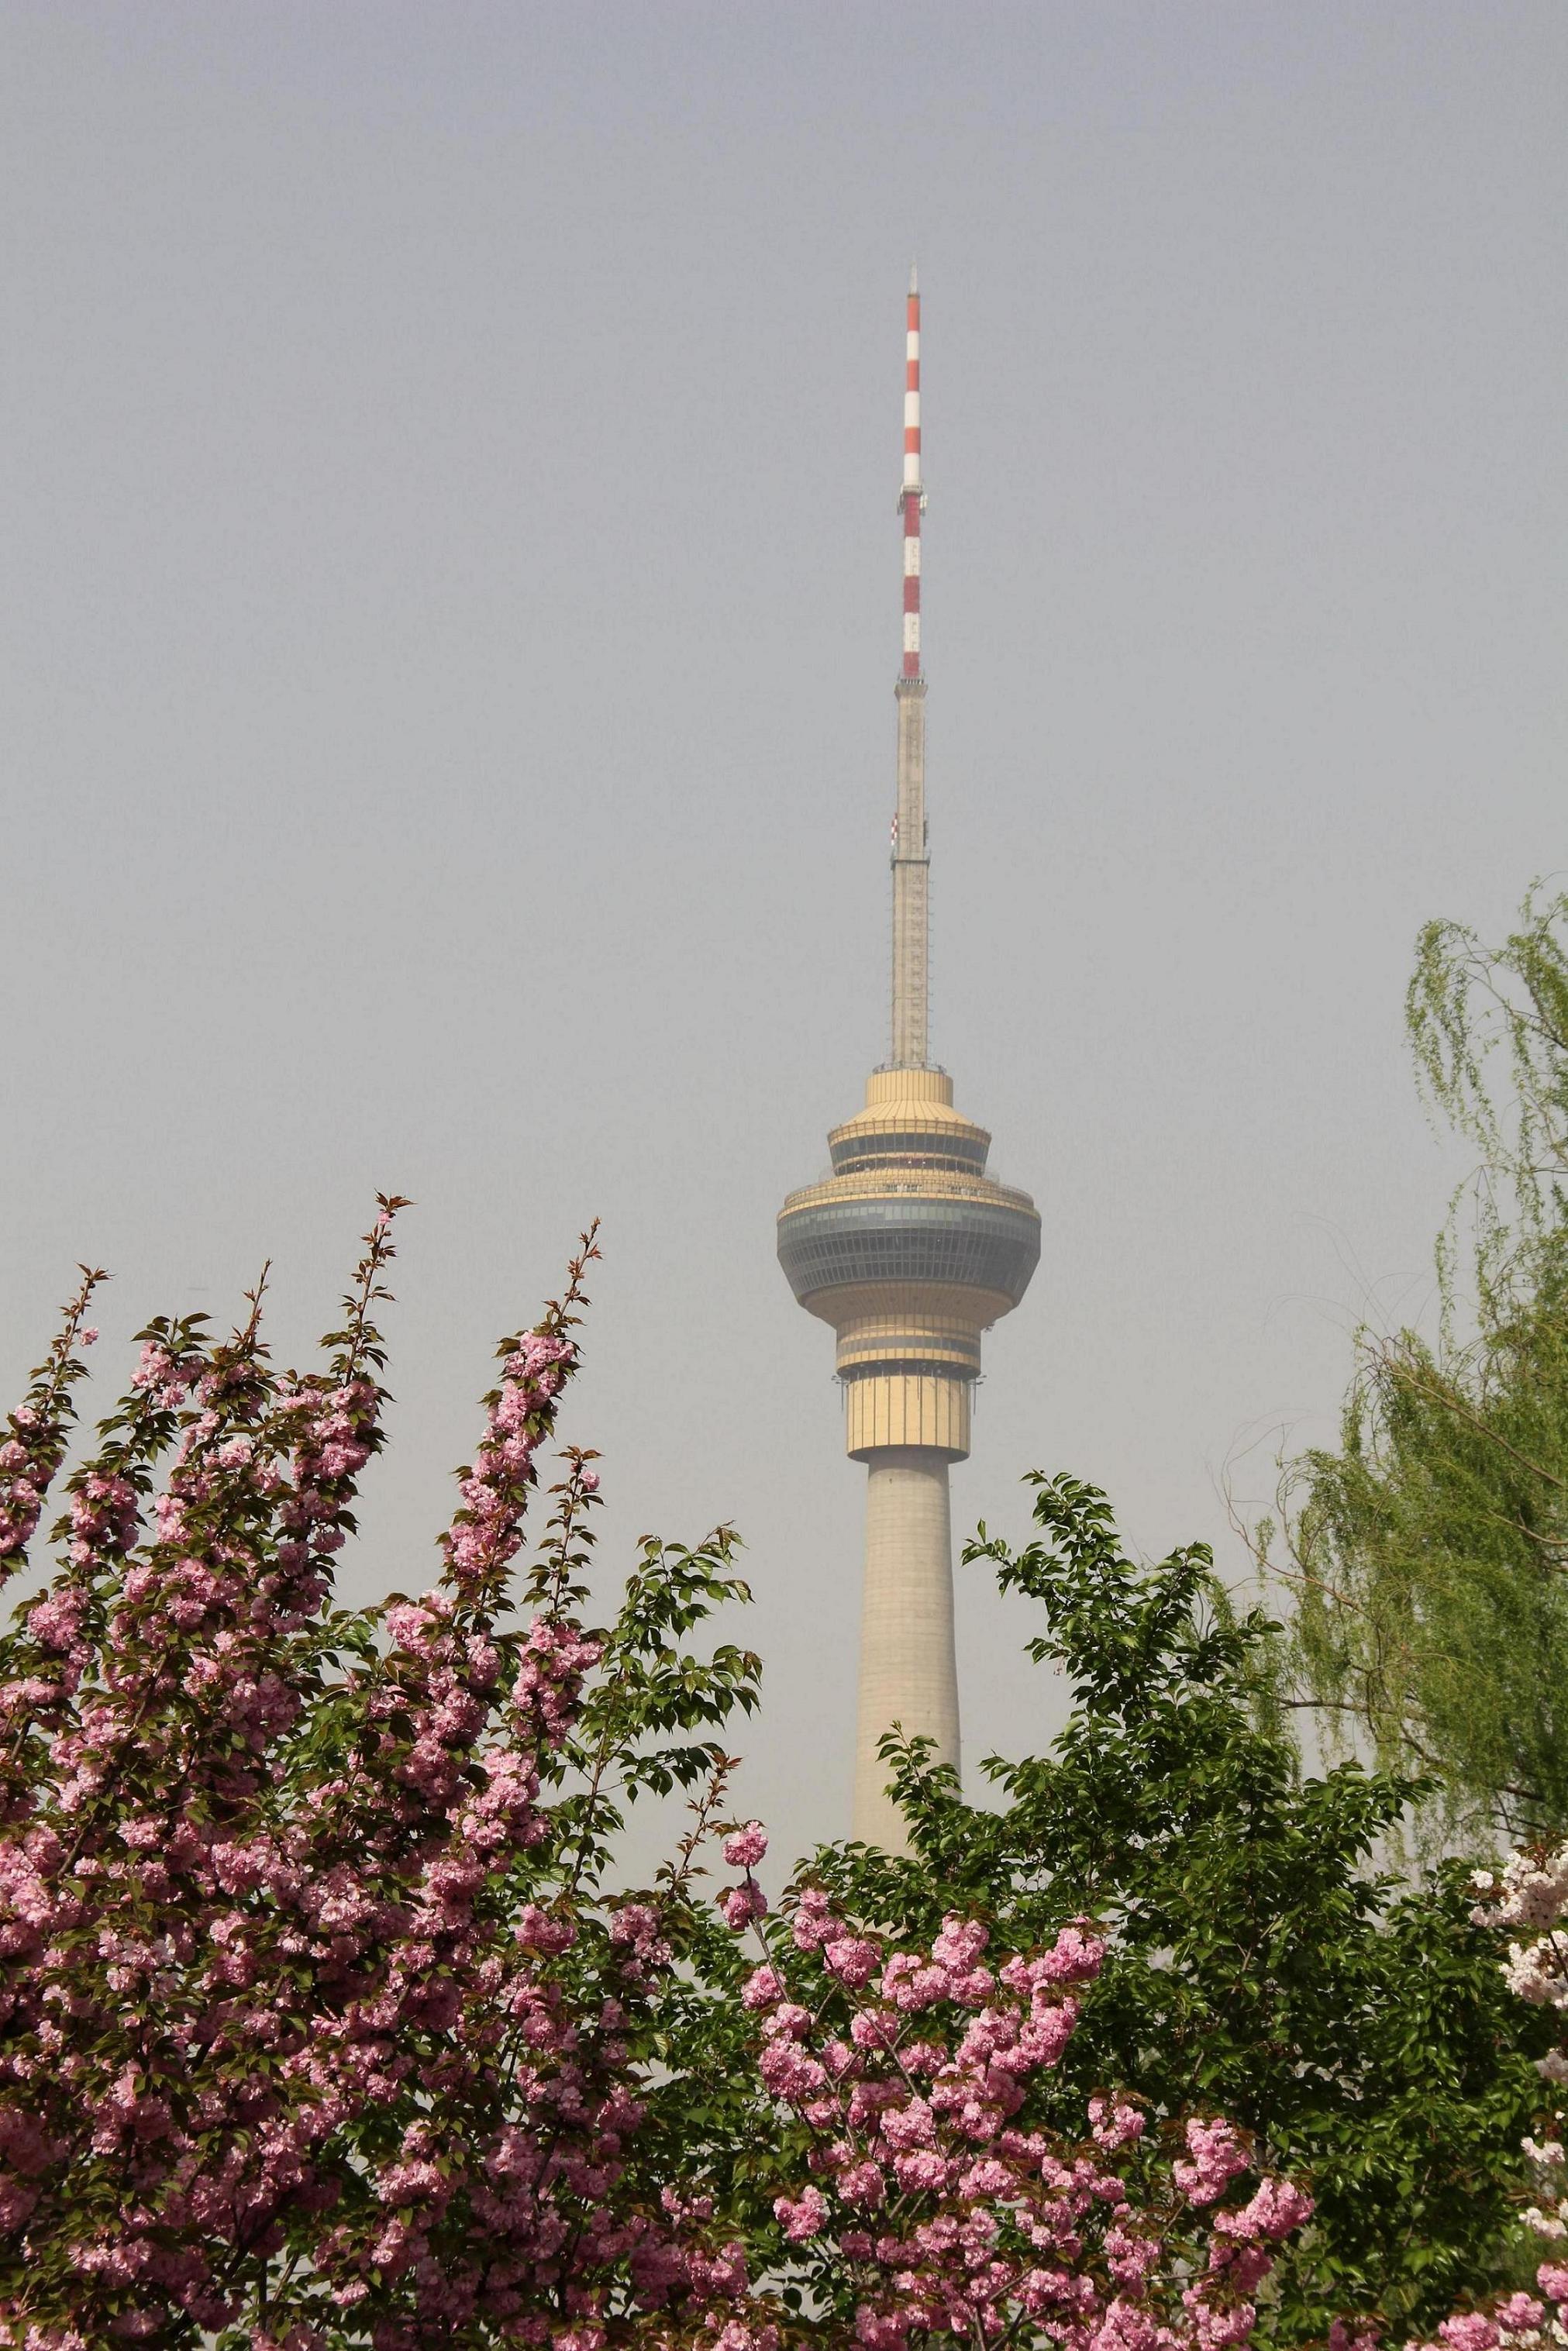 【携程攻略】北京北京天宁寺塔景点,天宁寺塔是中国现存的密檐式砖塔中比较典型的一座，也是北京创建年代…